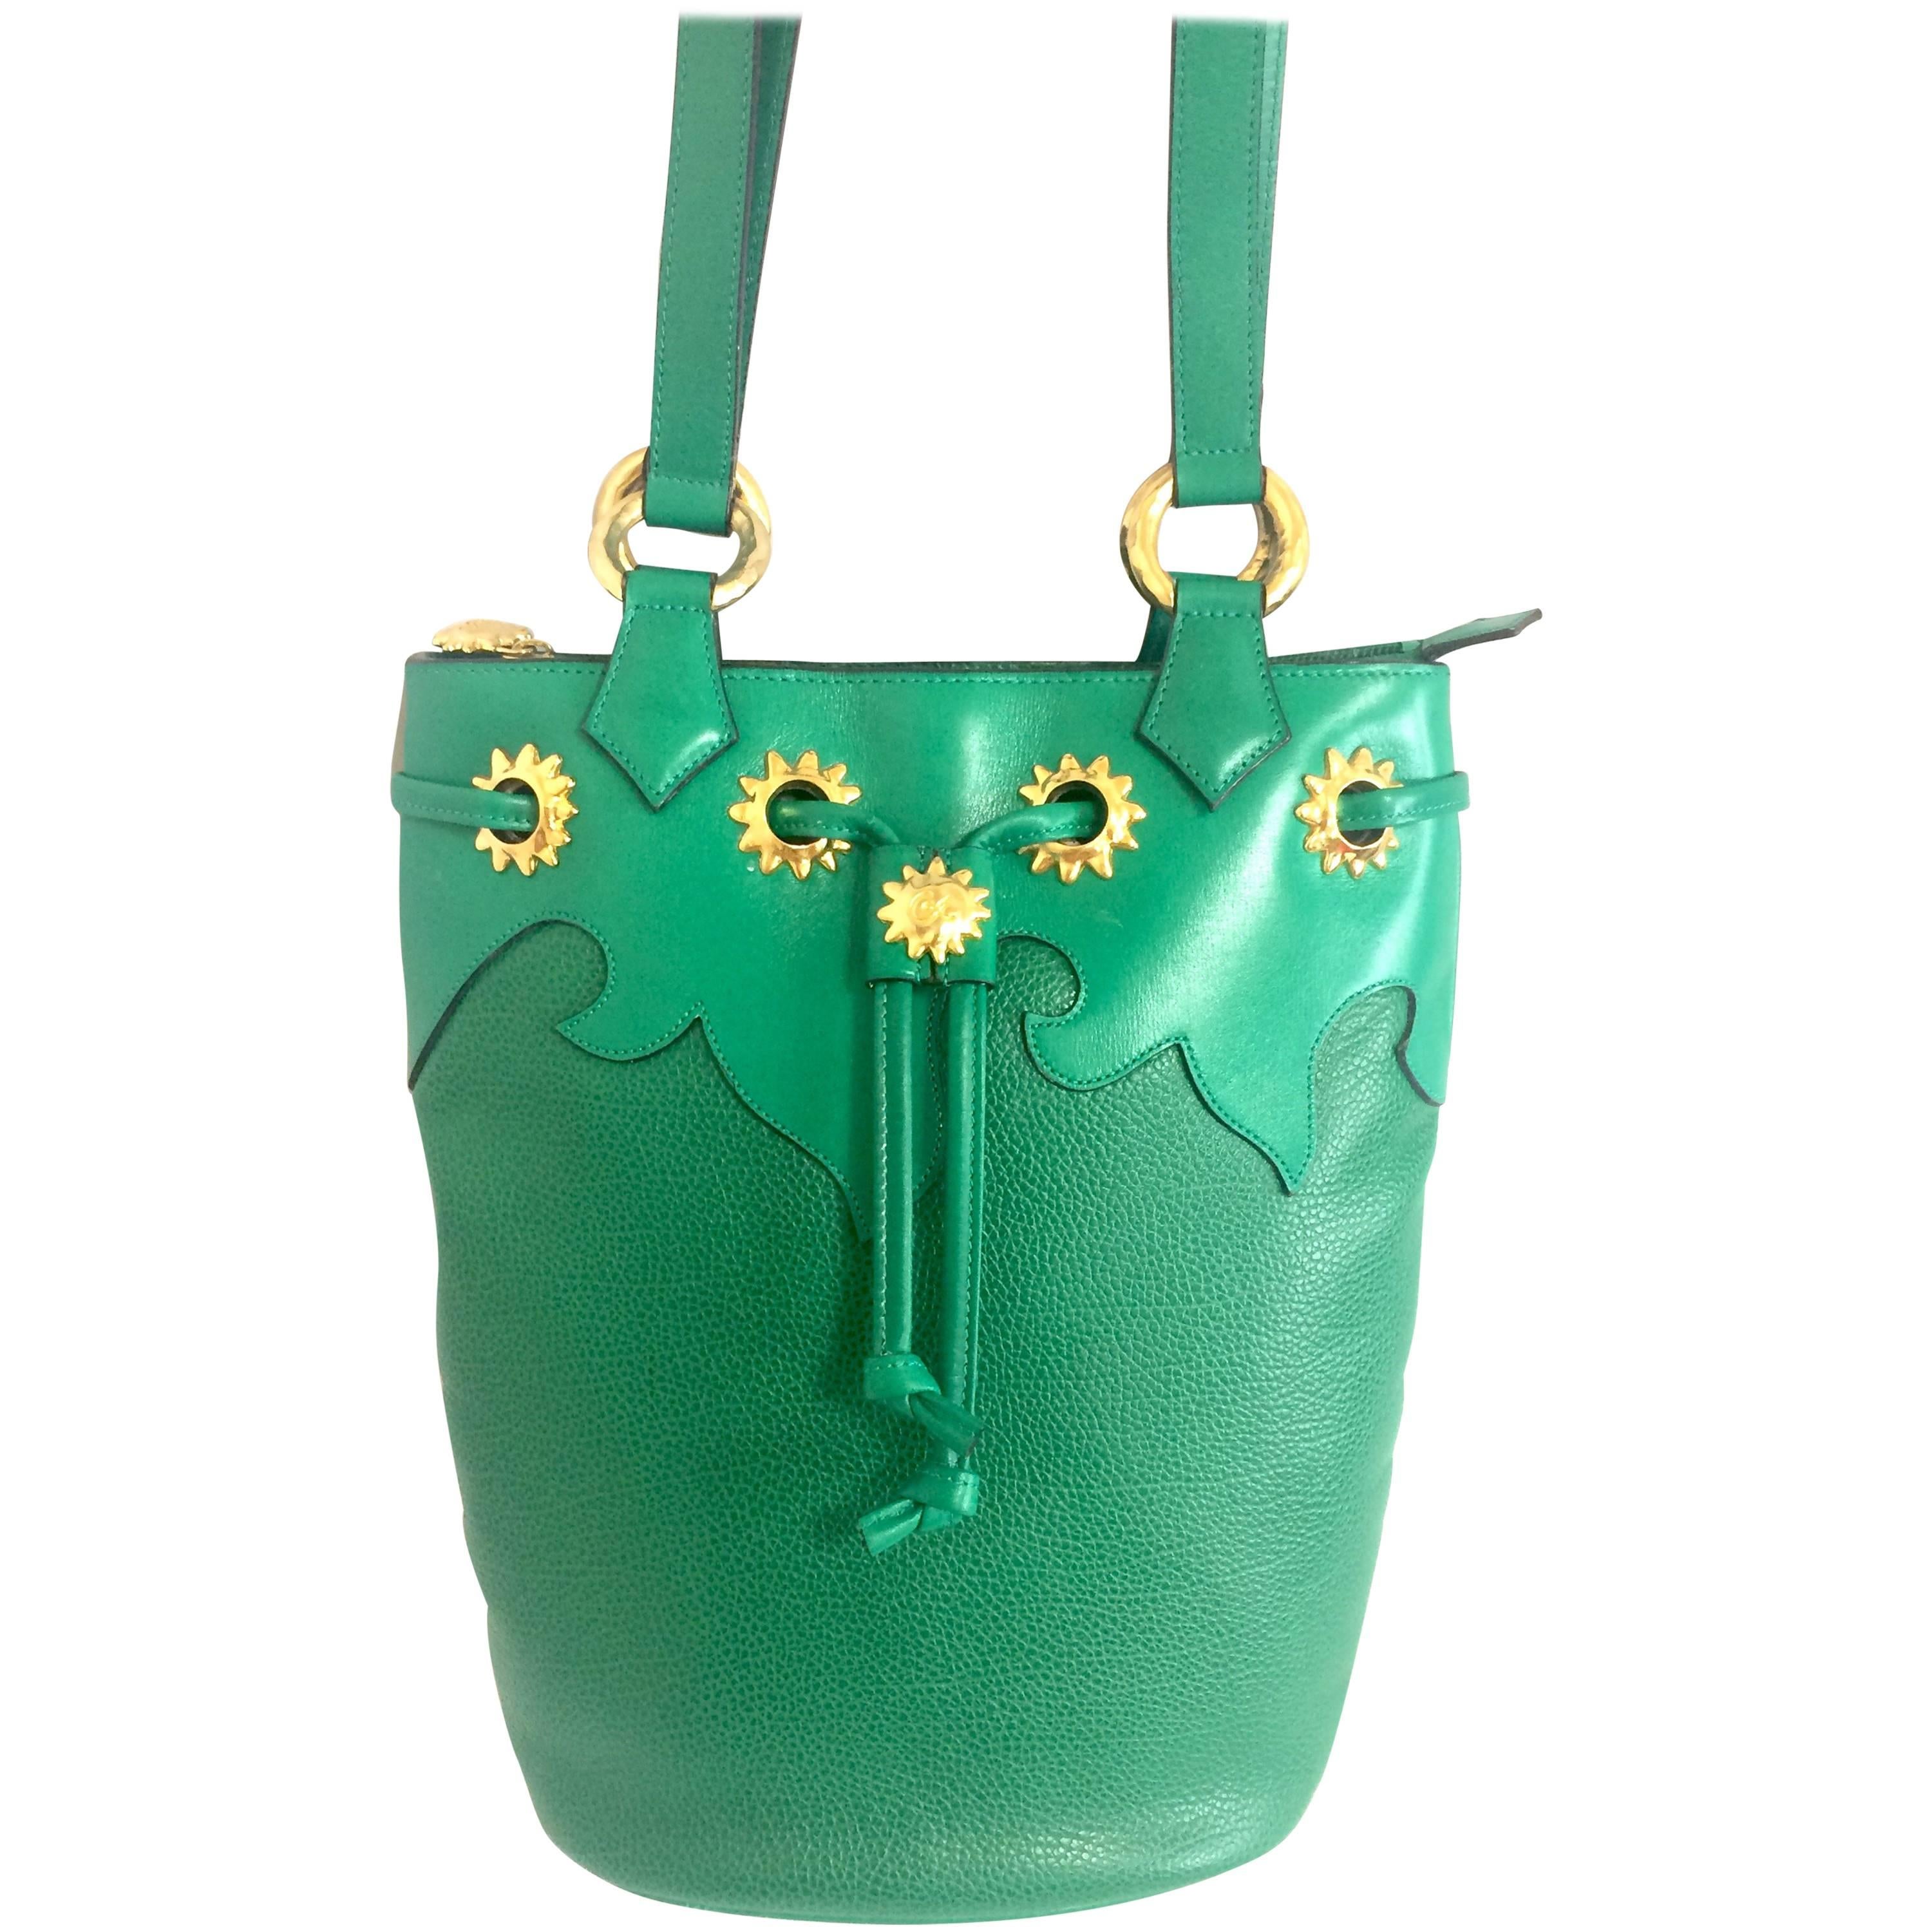 Vintage Christian Lacroix green hobo bucket shoulder bag with golden star motifs